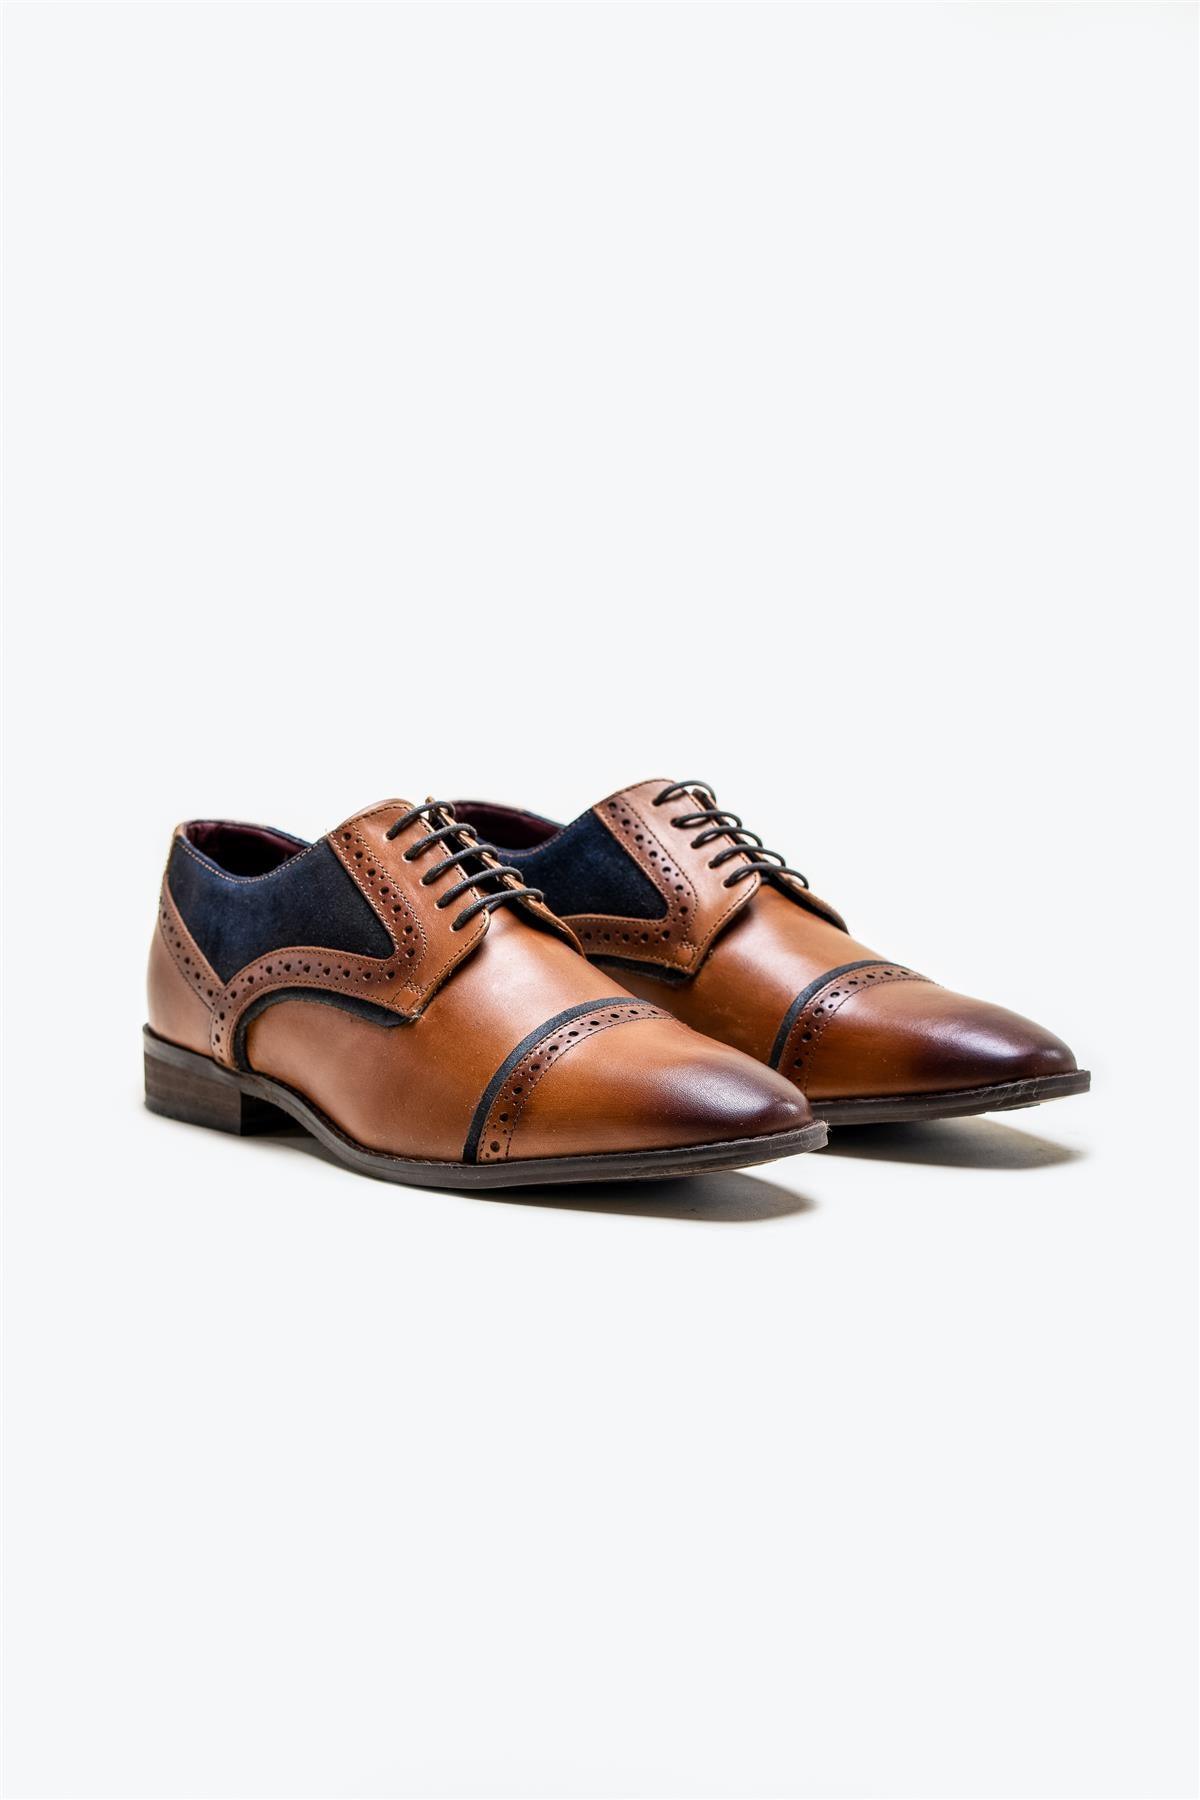 Braga tan/navy shoe front